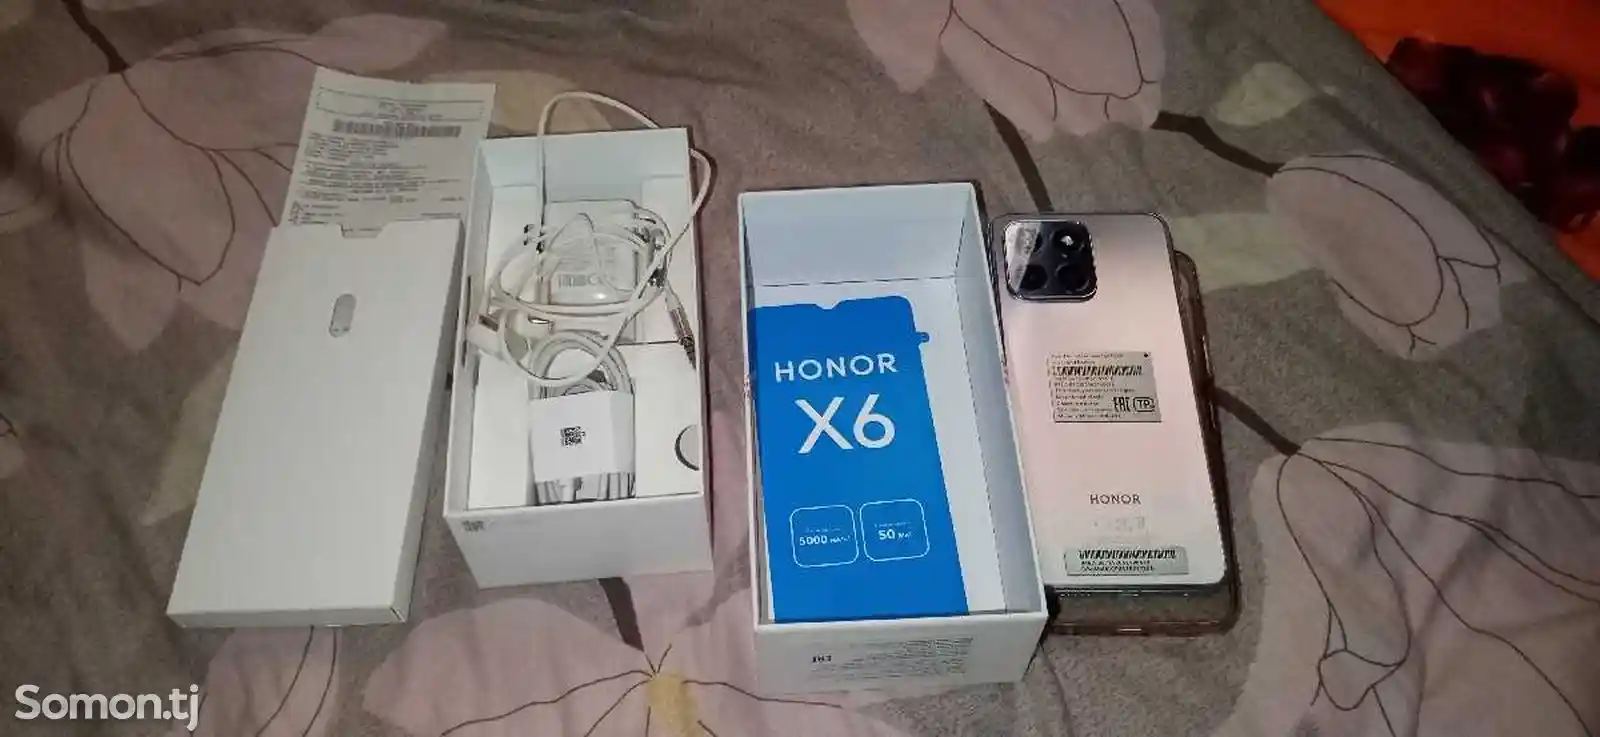 Honor x6-3